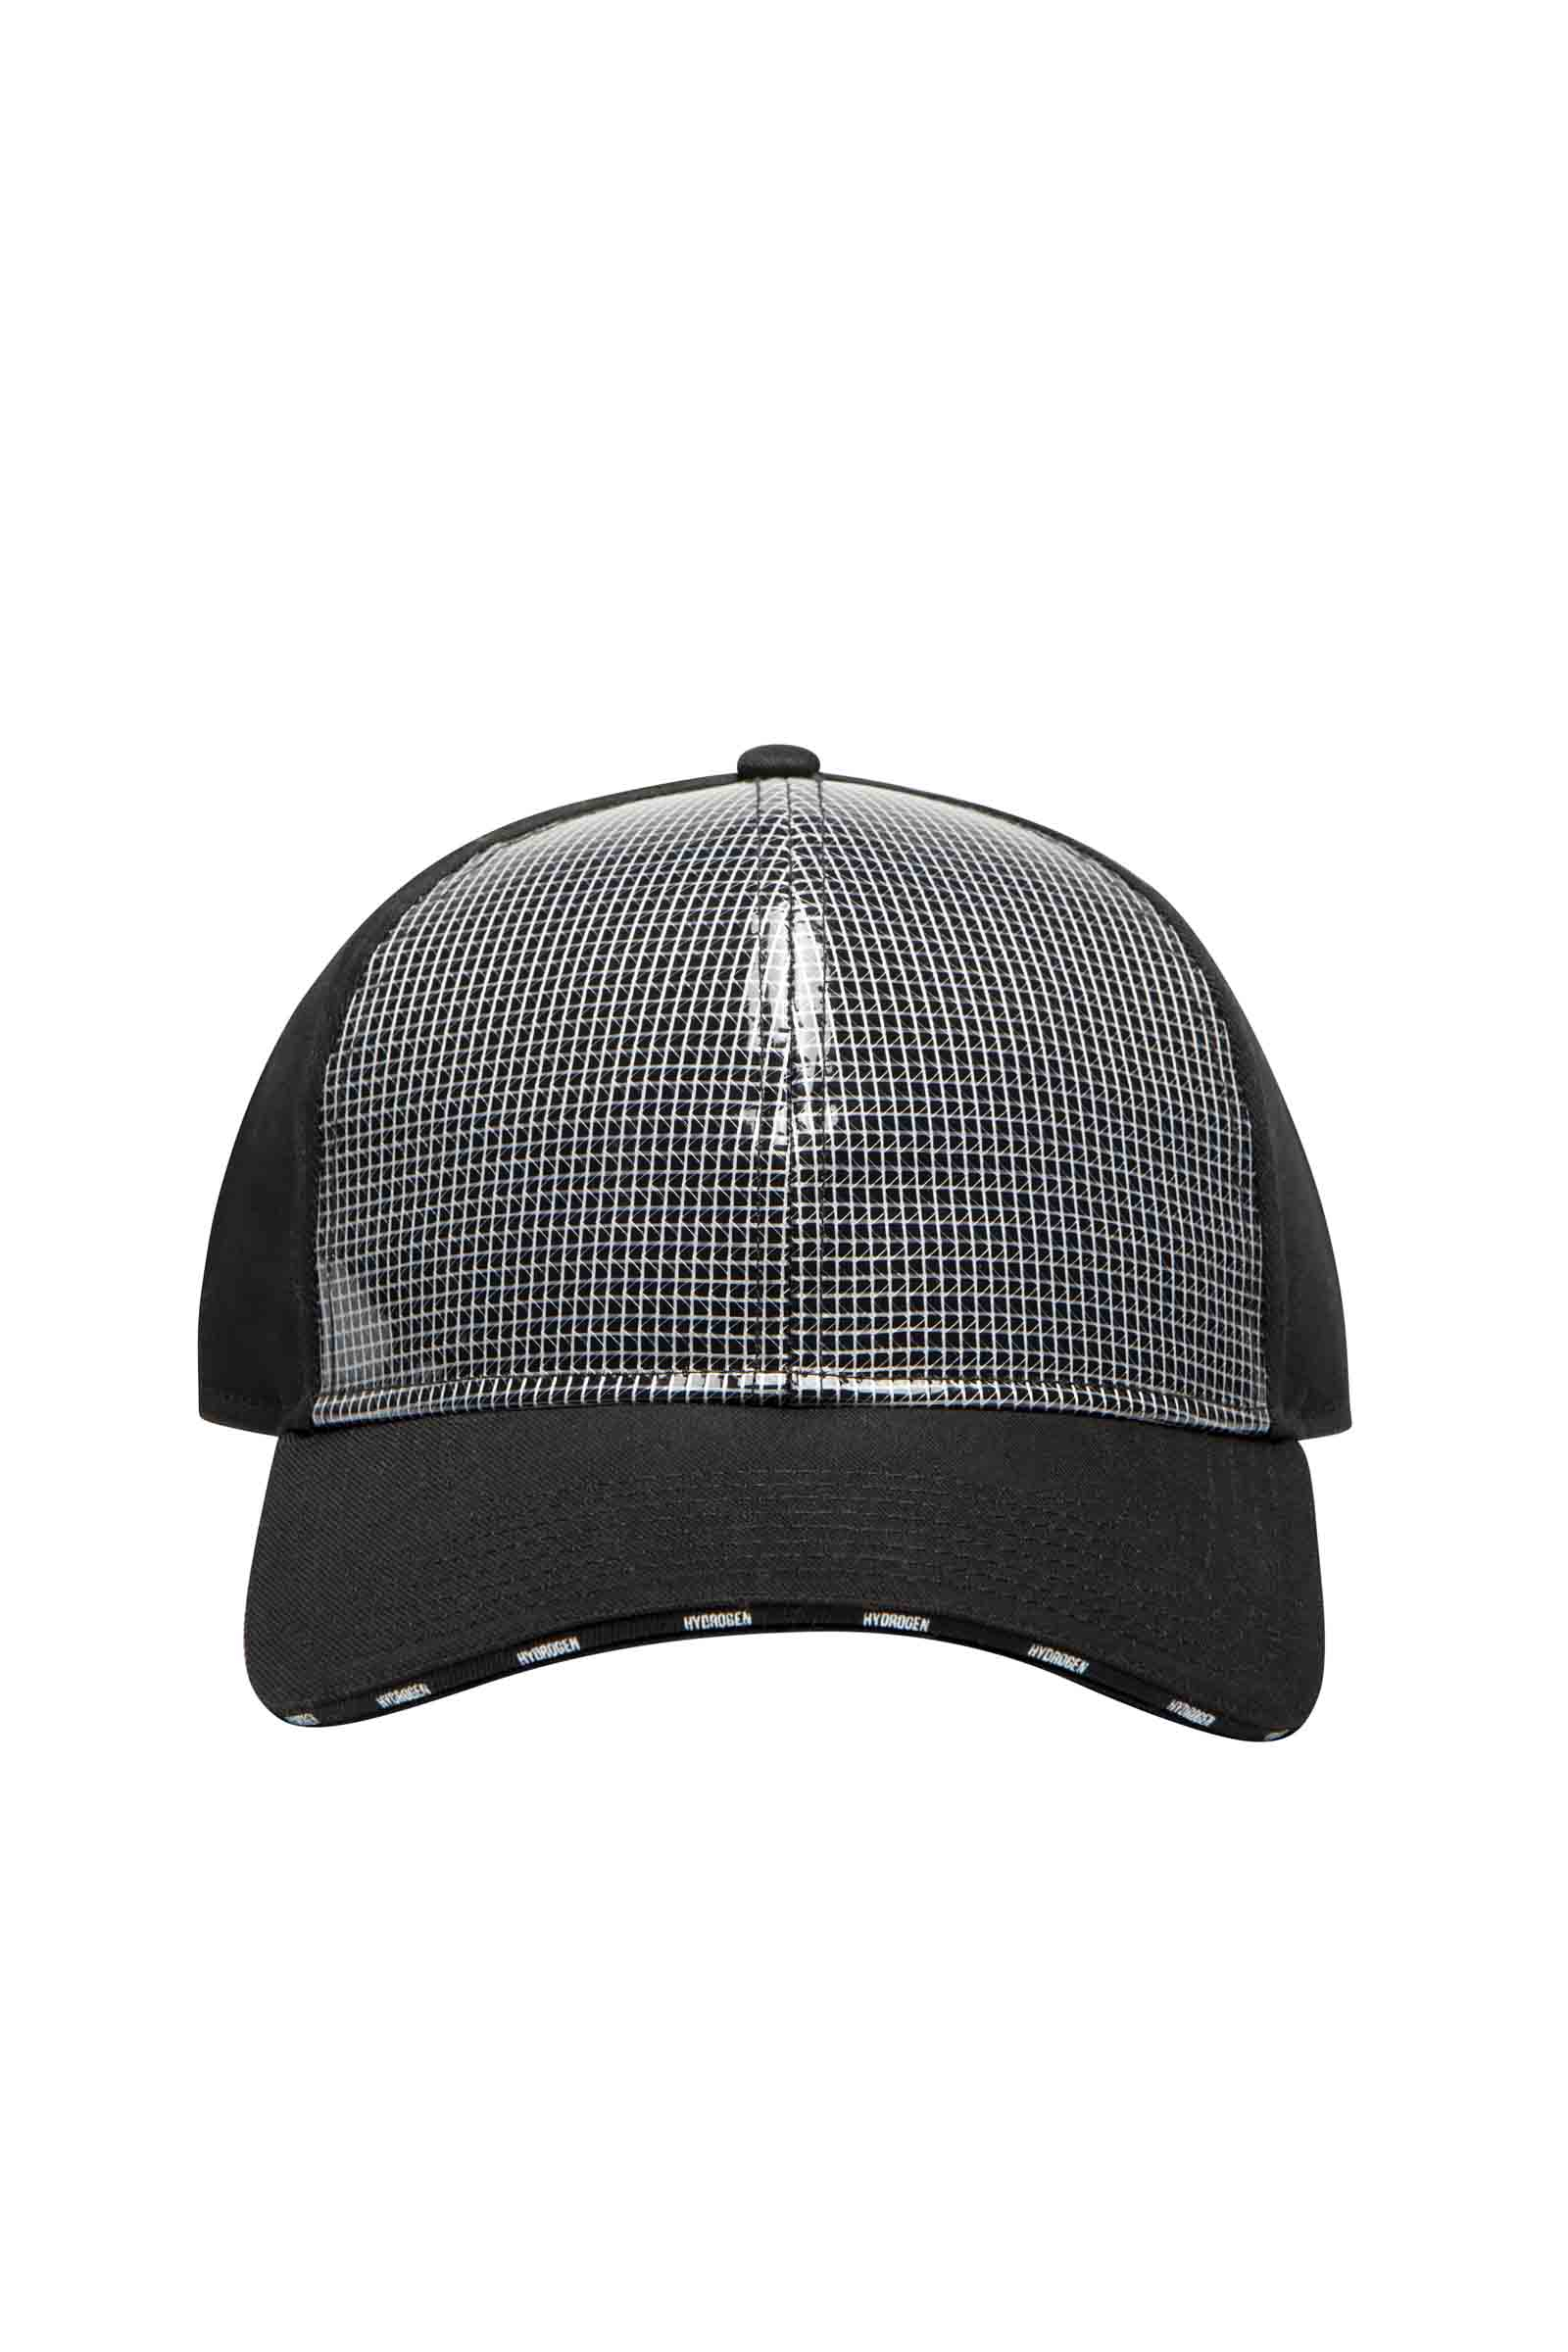 CAP - BLACK,SILVER - Abbigliamento sportivo | Hydrogen